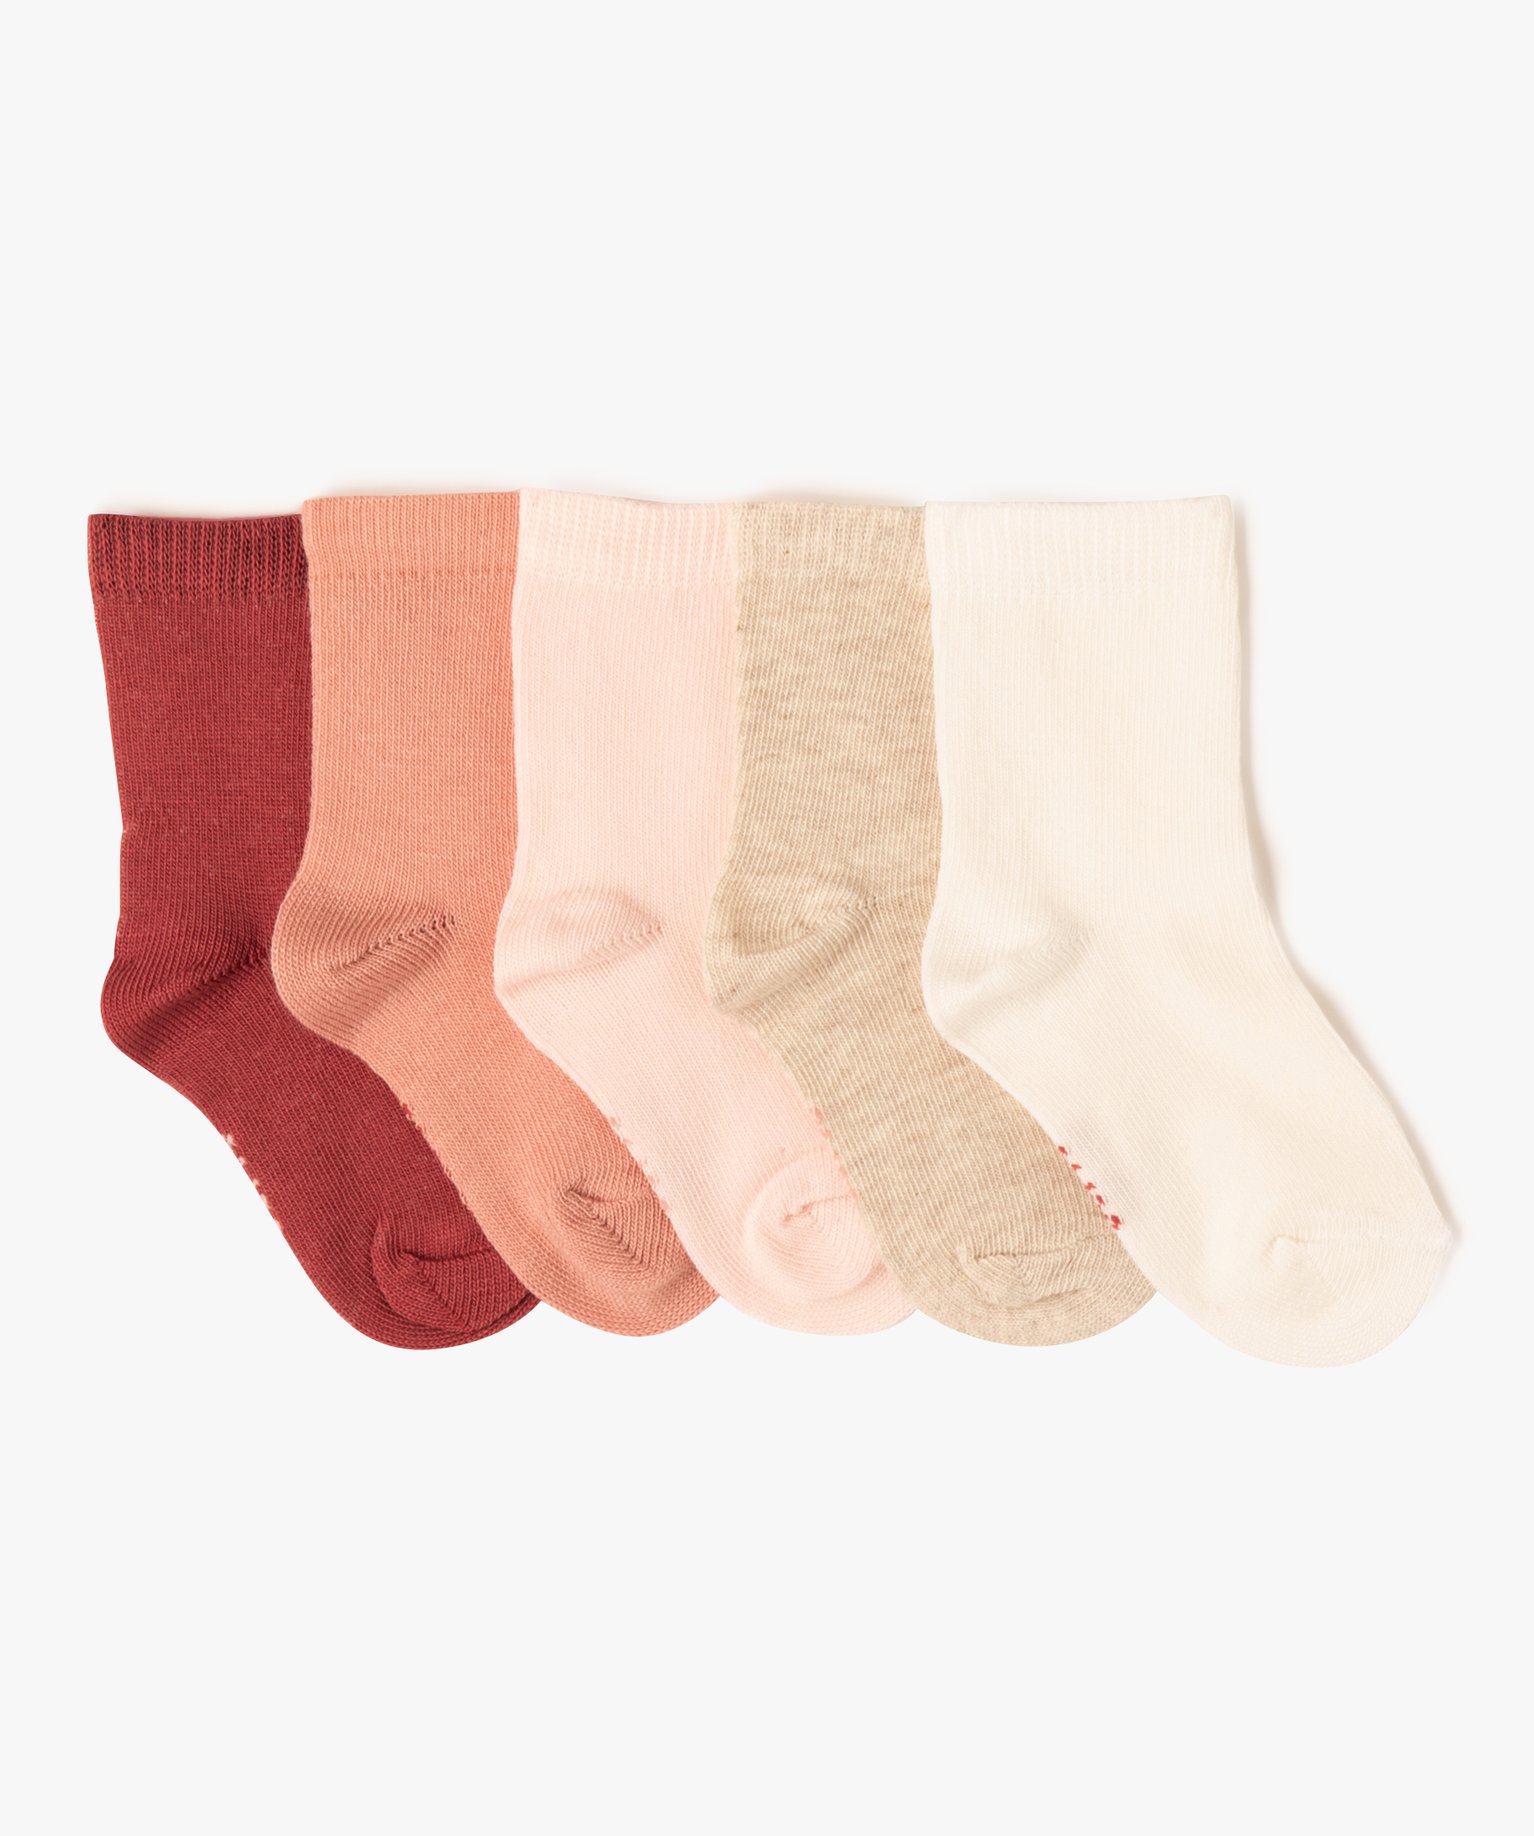 chaussettes unies bebe fille (lot de 5) rose chaussettes